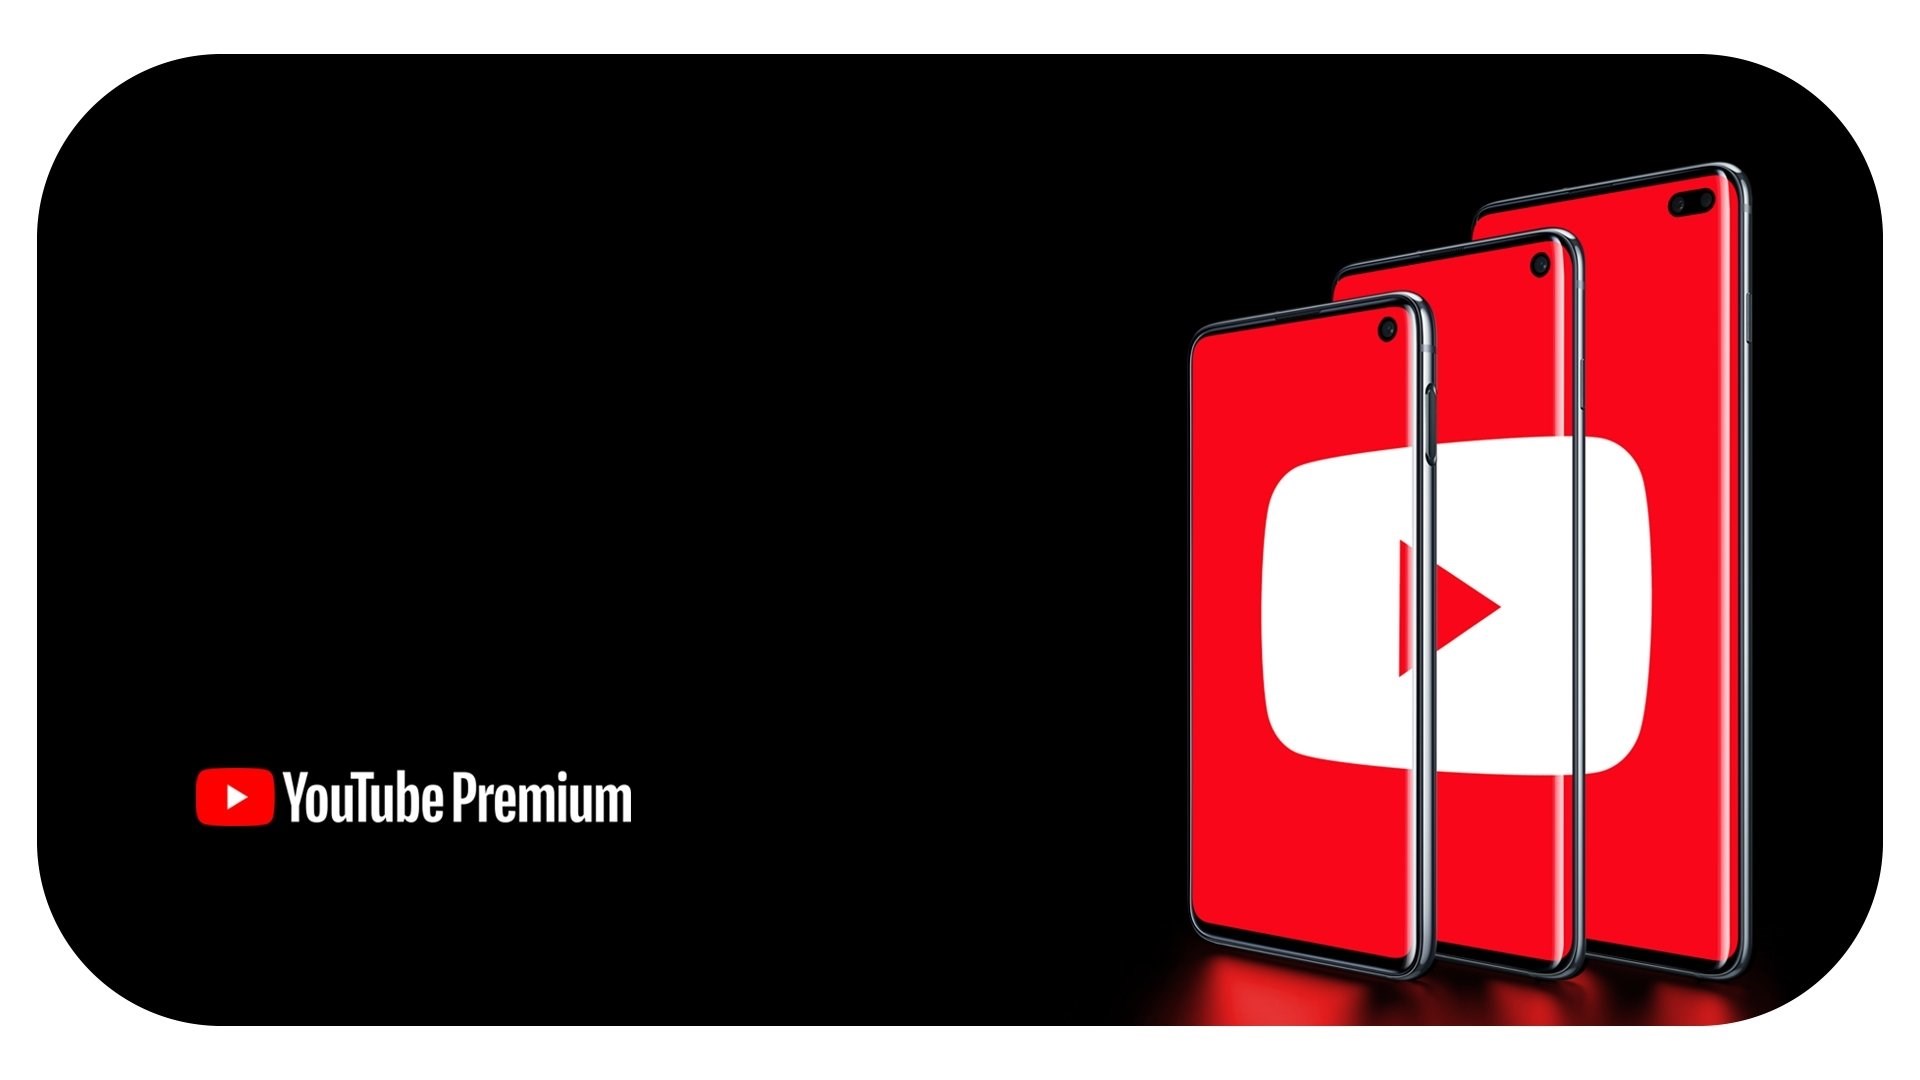 Türk Telekom Prime müşterilerine 3 ay YouTube Premium hediye!